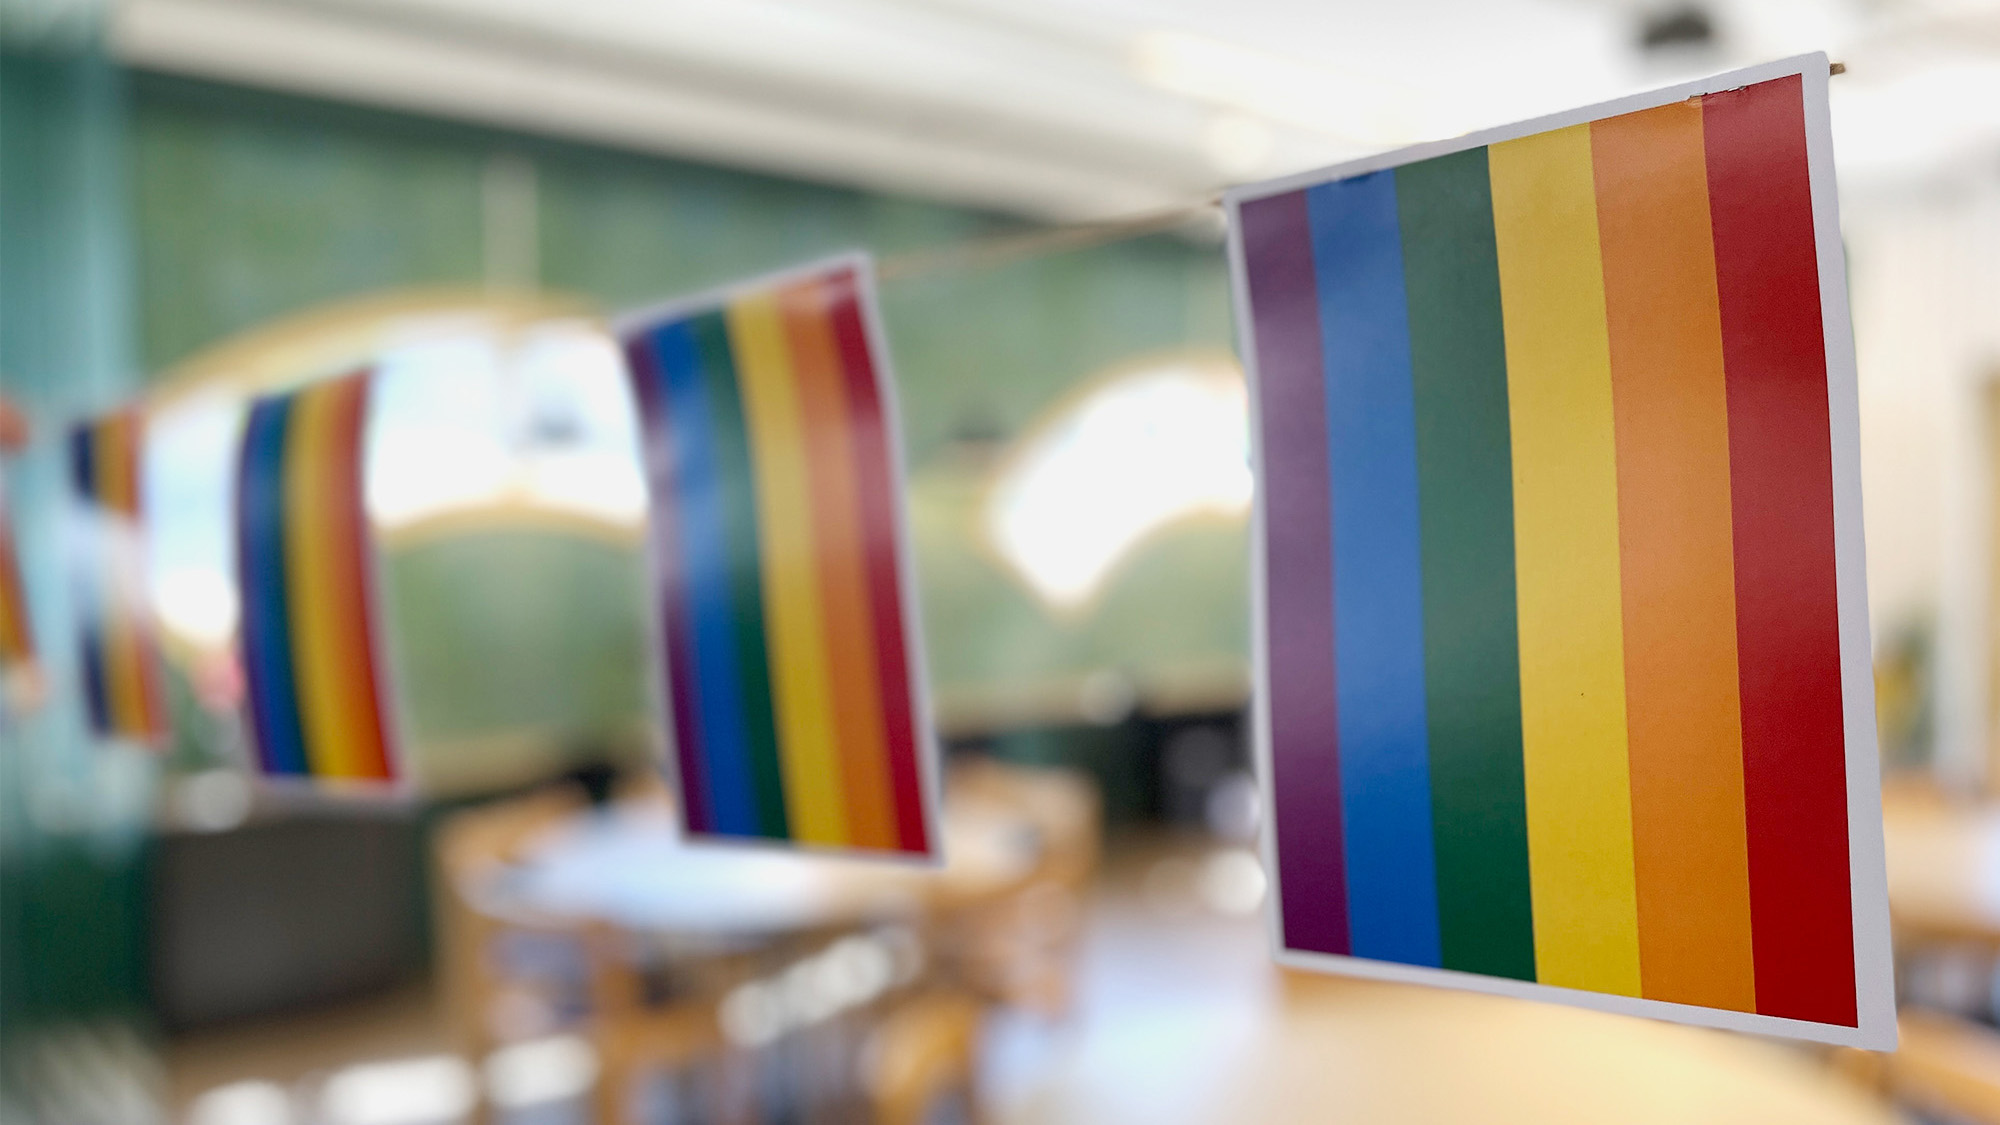 Regnbågsflaggor hänger på ett snöre. I bakgrunden anas en grön vägg och runda bord med stolar